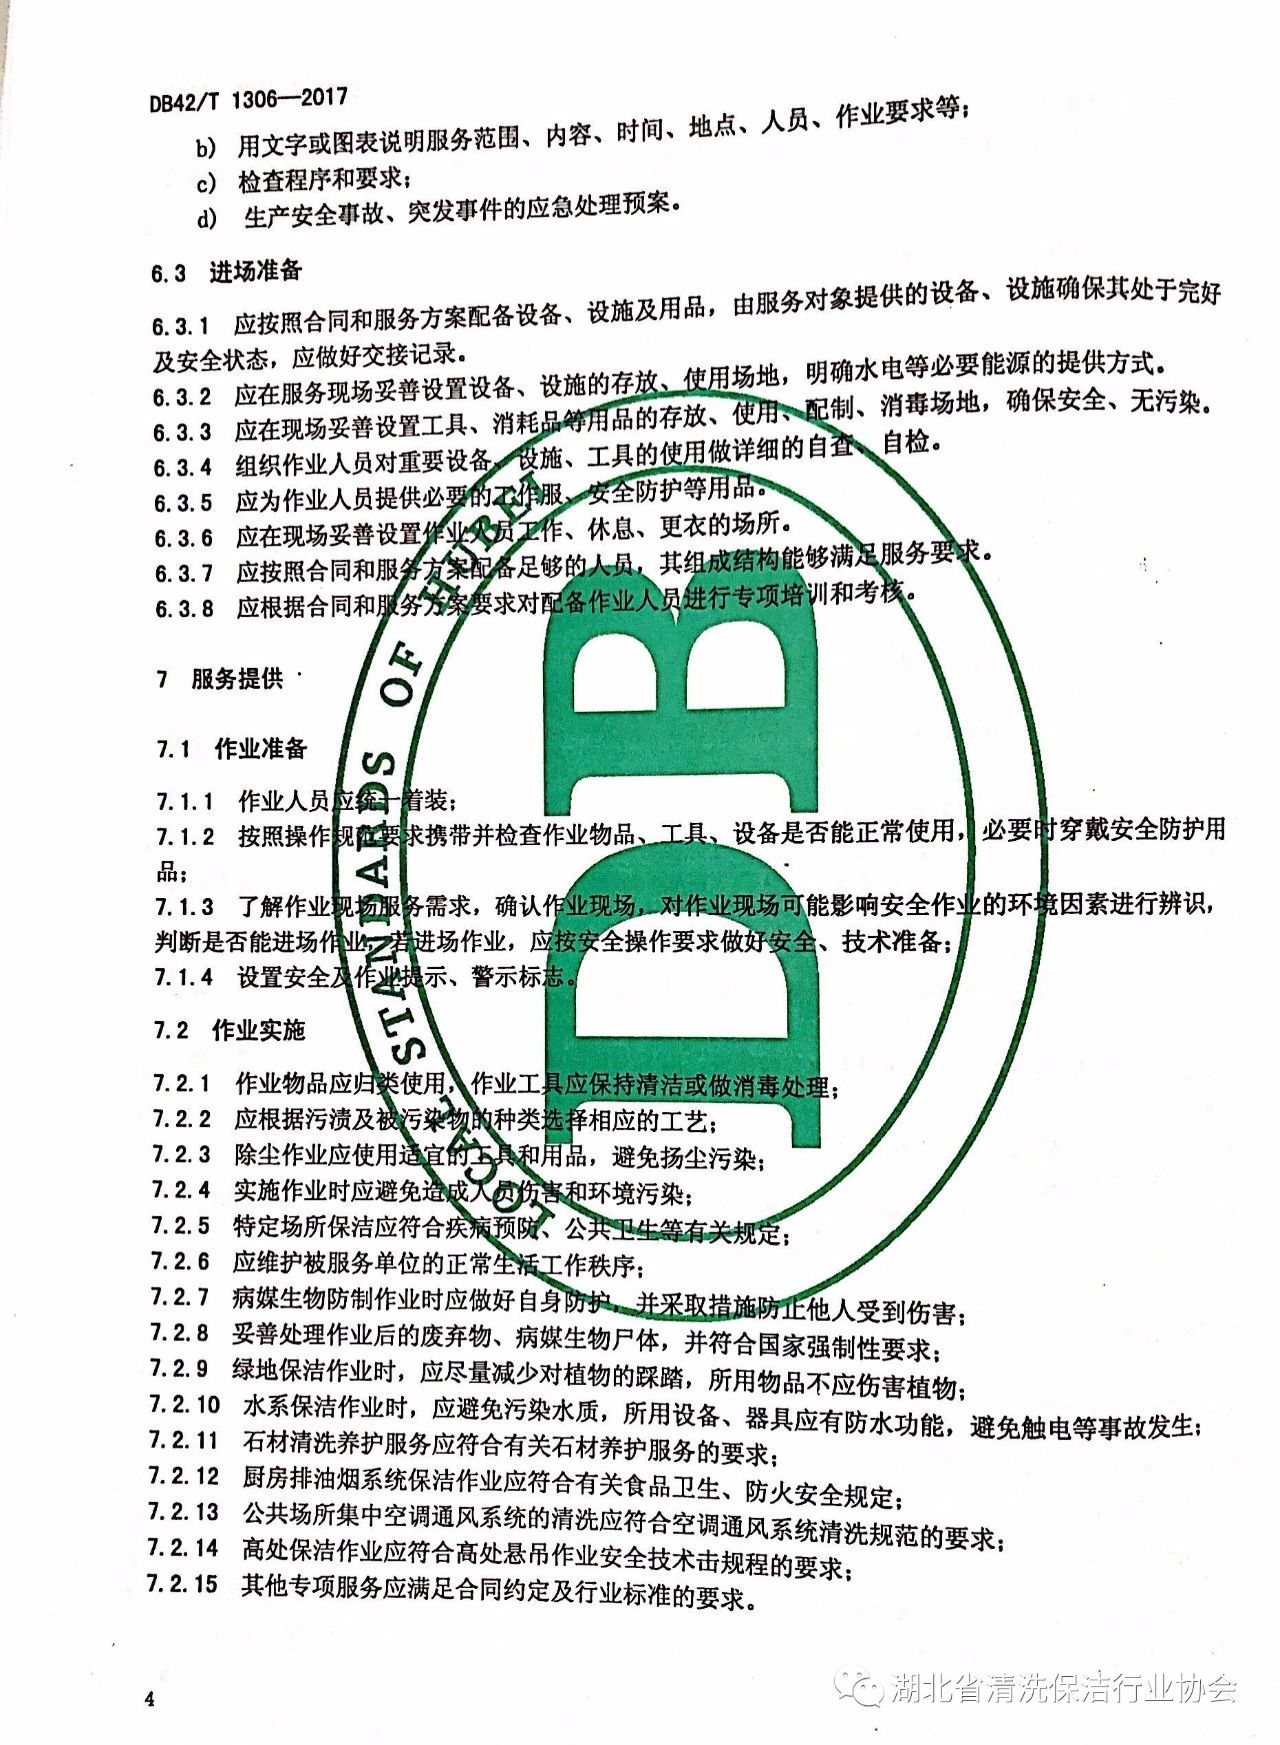 湖北省清洗保洁行业协会第一部地方标准《保洁服务通则》颁布实施8.jpg